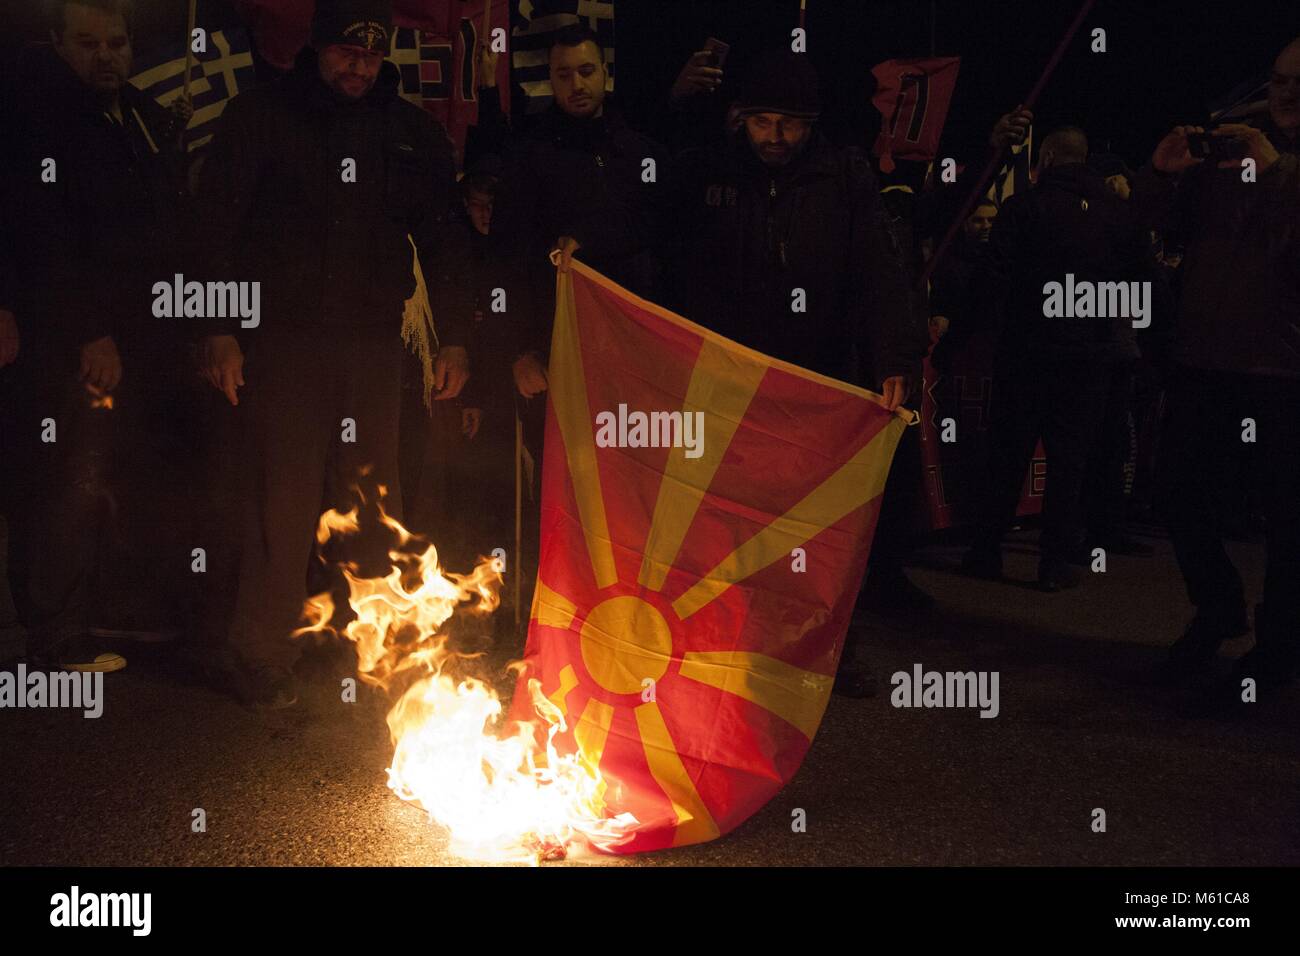 Anhänger der Griechischen Chrysi Avgi (Golden Dawn), rechtsextremen nationalistischen Partei, brennen Flagge der EHEMALIGEN JUGOSLAWISCHEN REPUBLIK MAZEDONIEN während der Rallye in Athen. 03.02.2018 | Verwendung weltweit Stockfoto